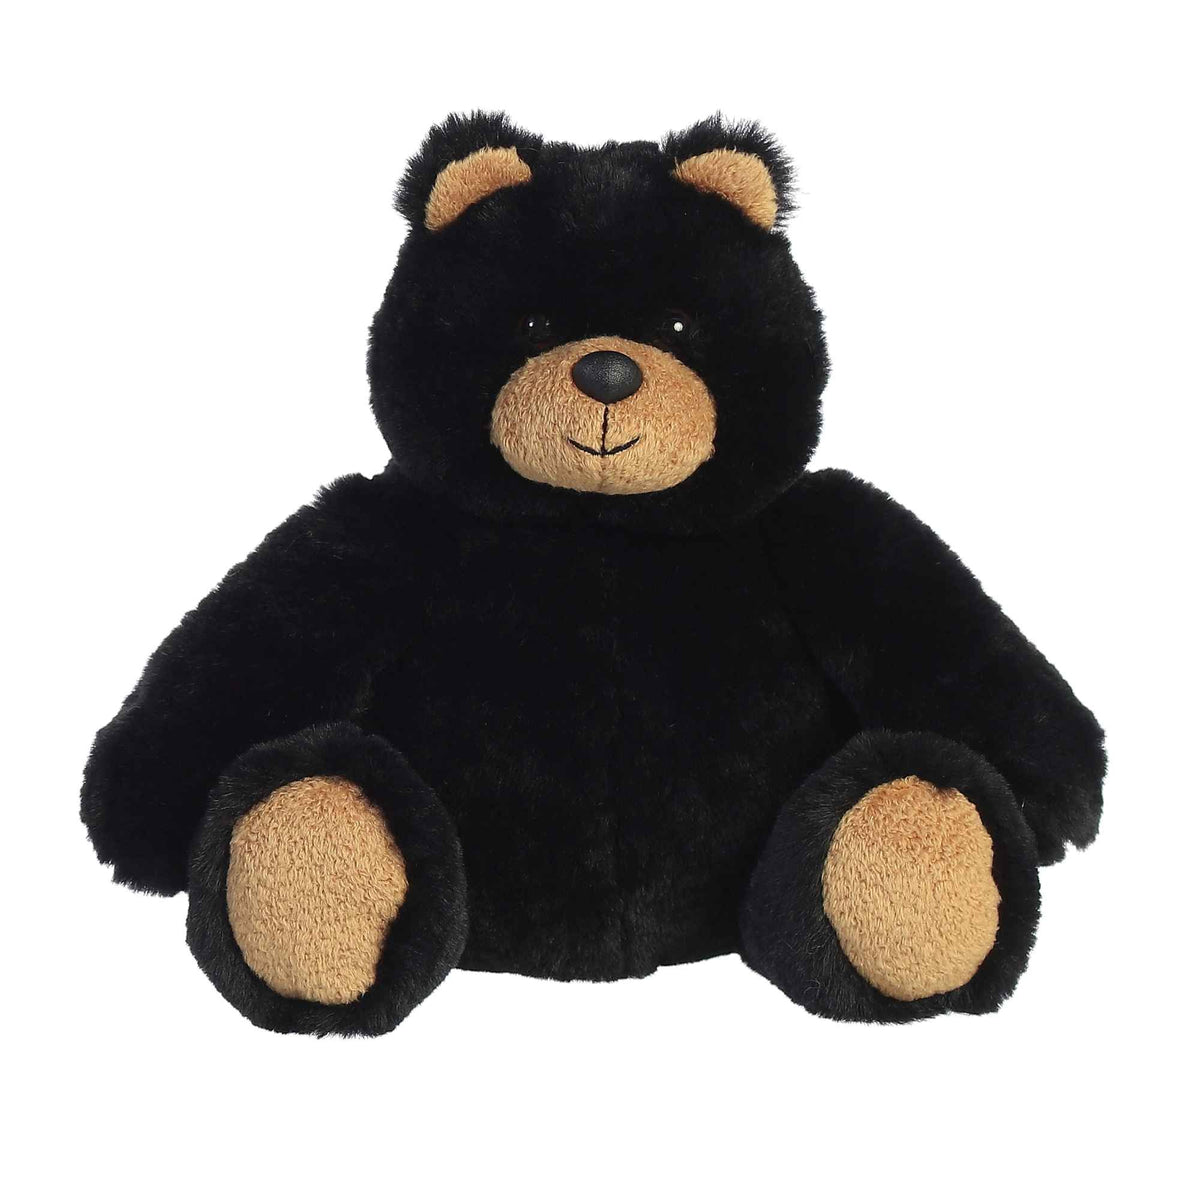 Aurora® - Bear - Bronson Black Bear™